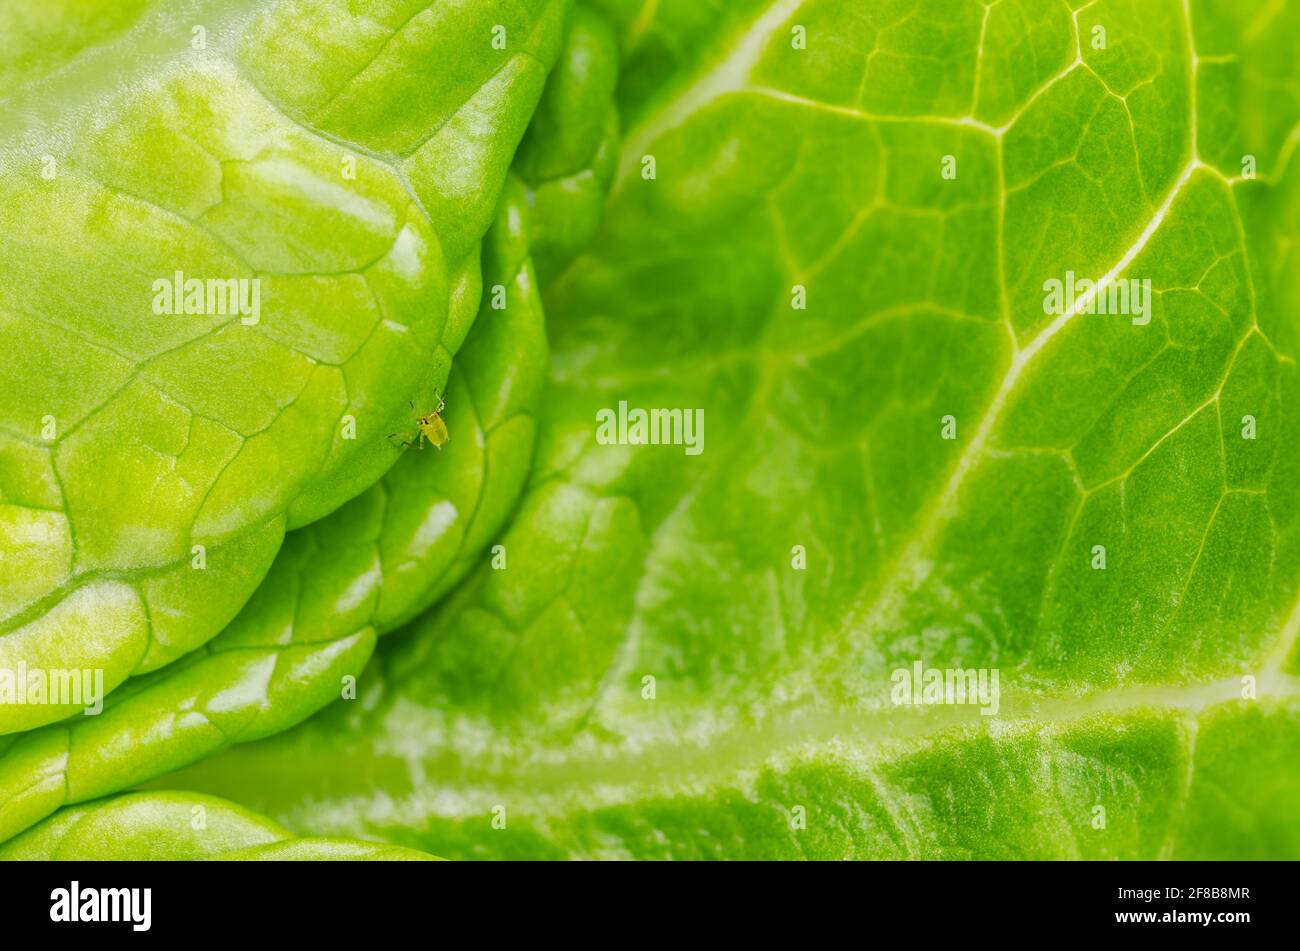 Plante el piojo en la hoja verde de la lechuga. Áfido verde, chupando savia en hoja fresca de lechuga romana. Mosca verde, insecto de la familia Aphidoidea. Foto de stock